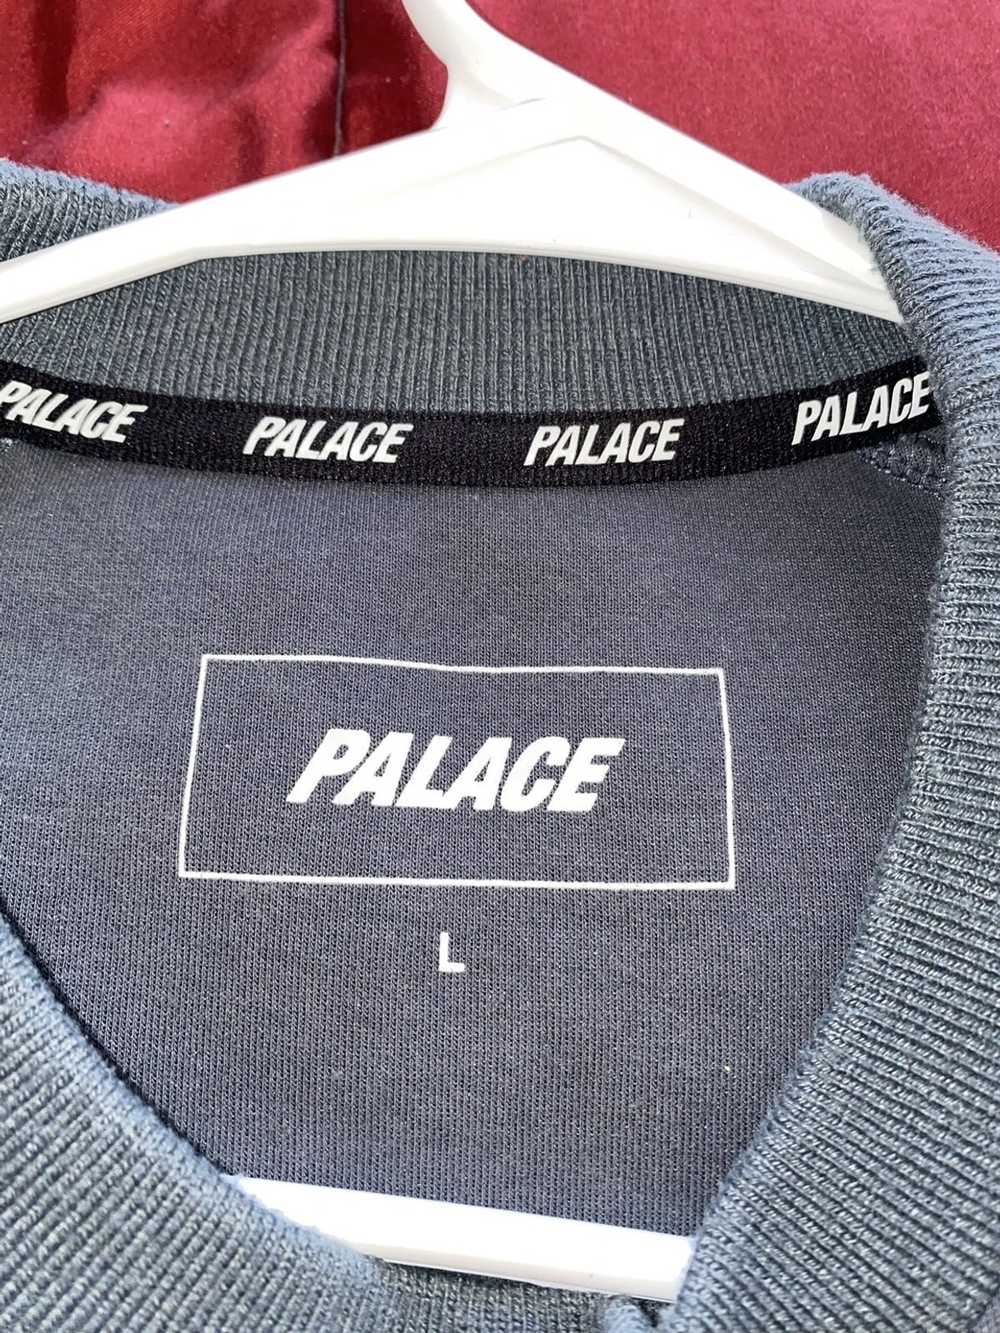 Palace Palace Crew Neck - image 3